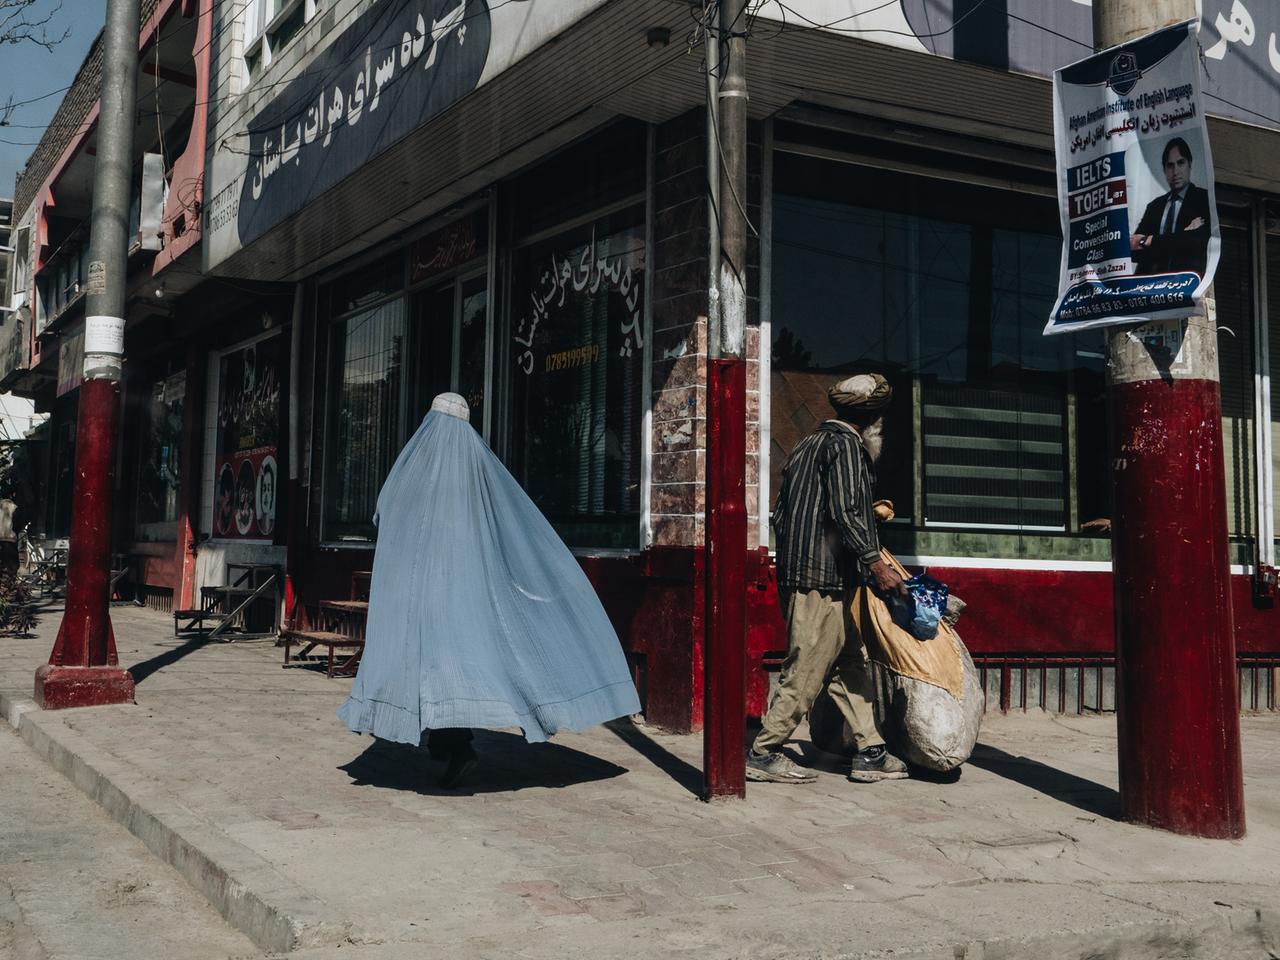 Straßenszene in Kabul: Eine vollverschleierte Frau und ein Mann gehen die Straße entlang.